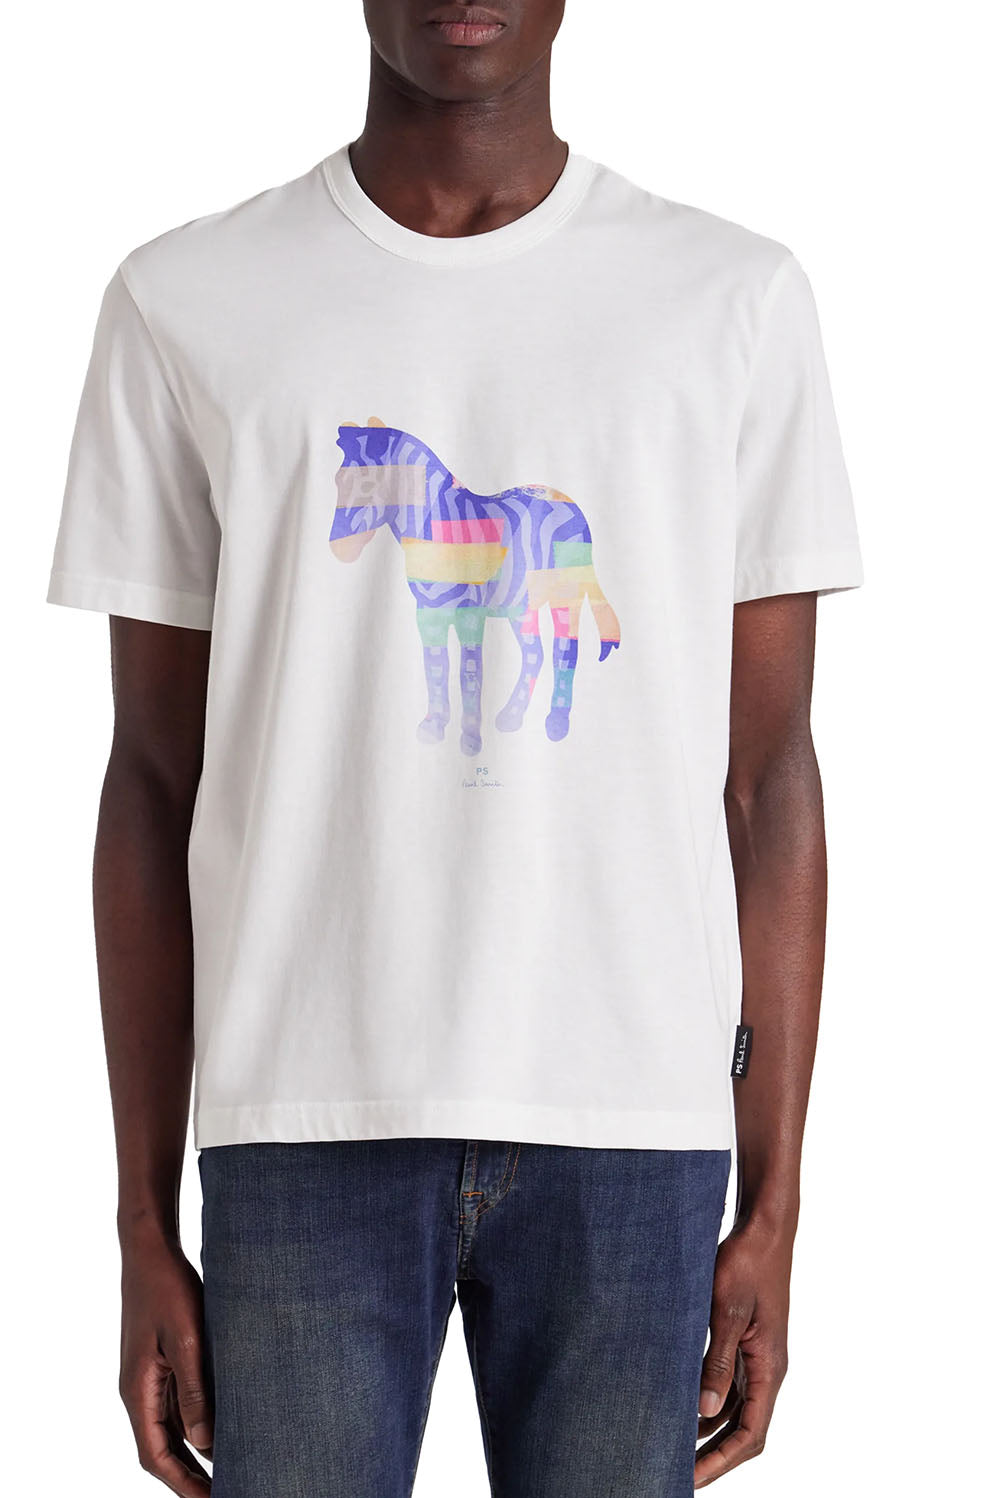  Paul Smith T-shirt Con Stampa Grafica Bianco Uomo - 2